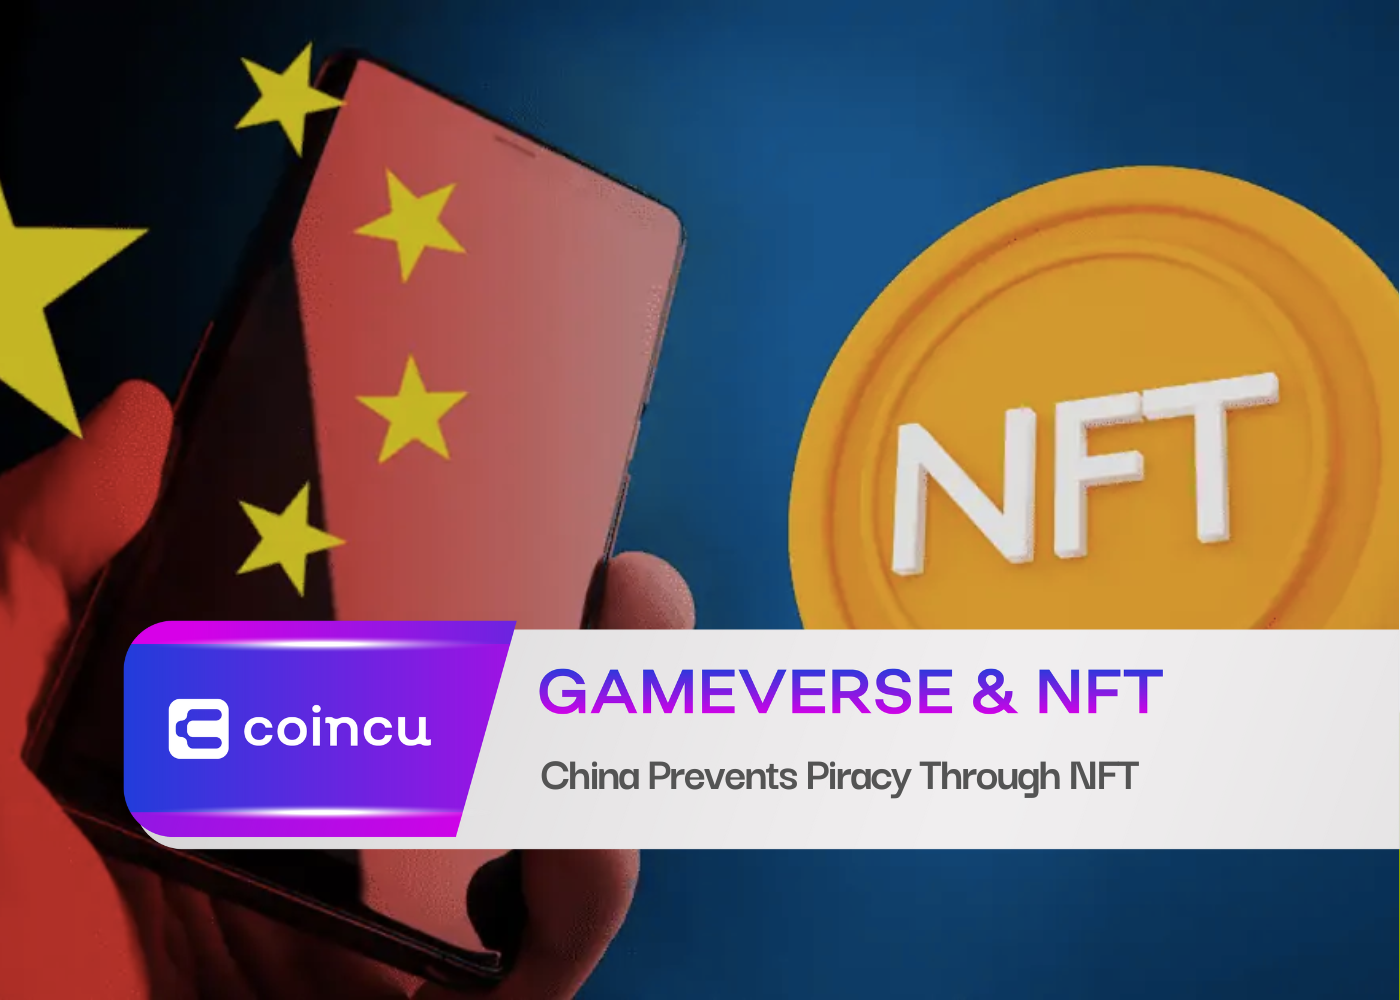 Trung Quốc ngăn chặn vi phạm bản quyền thông qua NFT